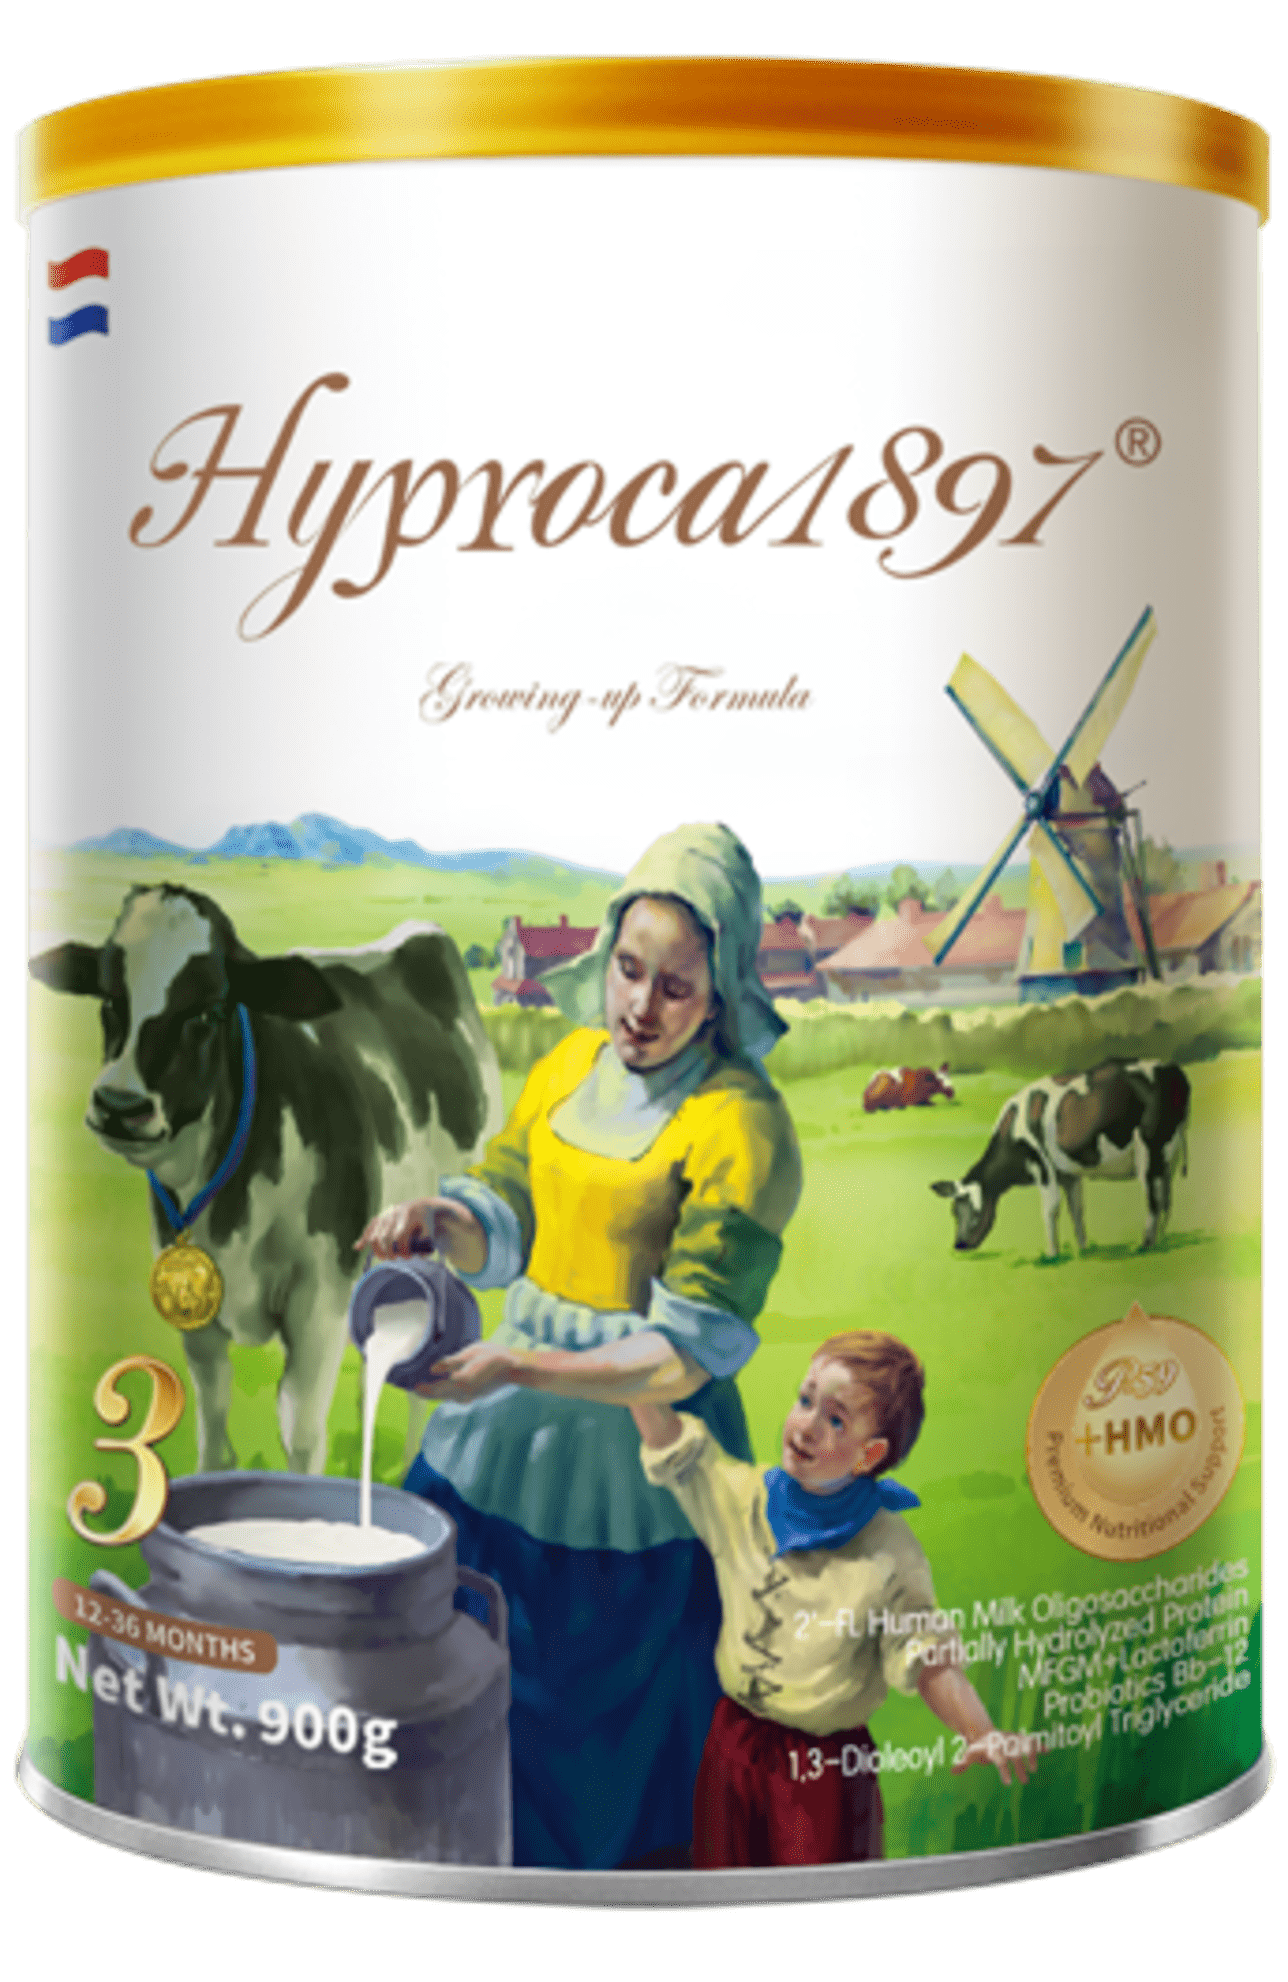 海普诺凯1897未来版奶粉